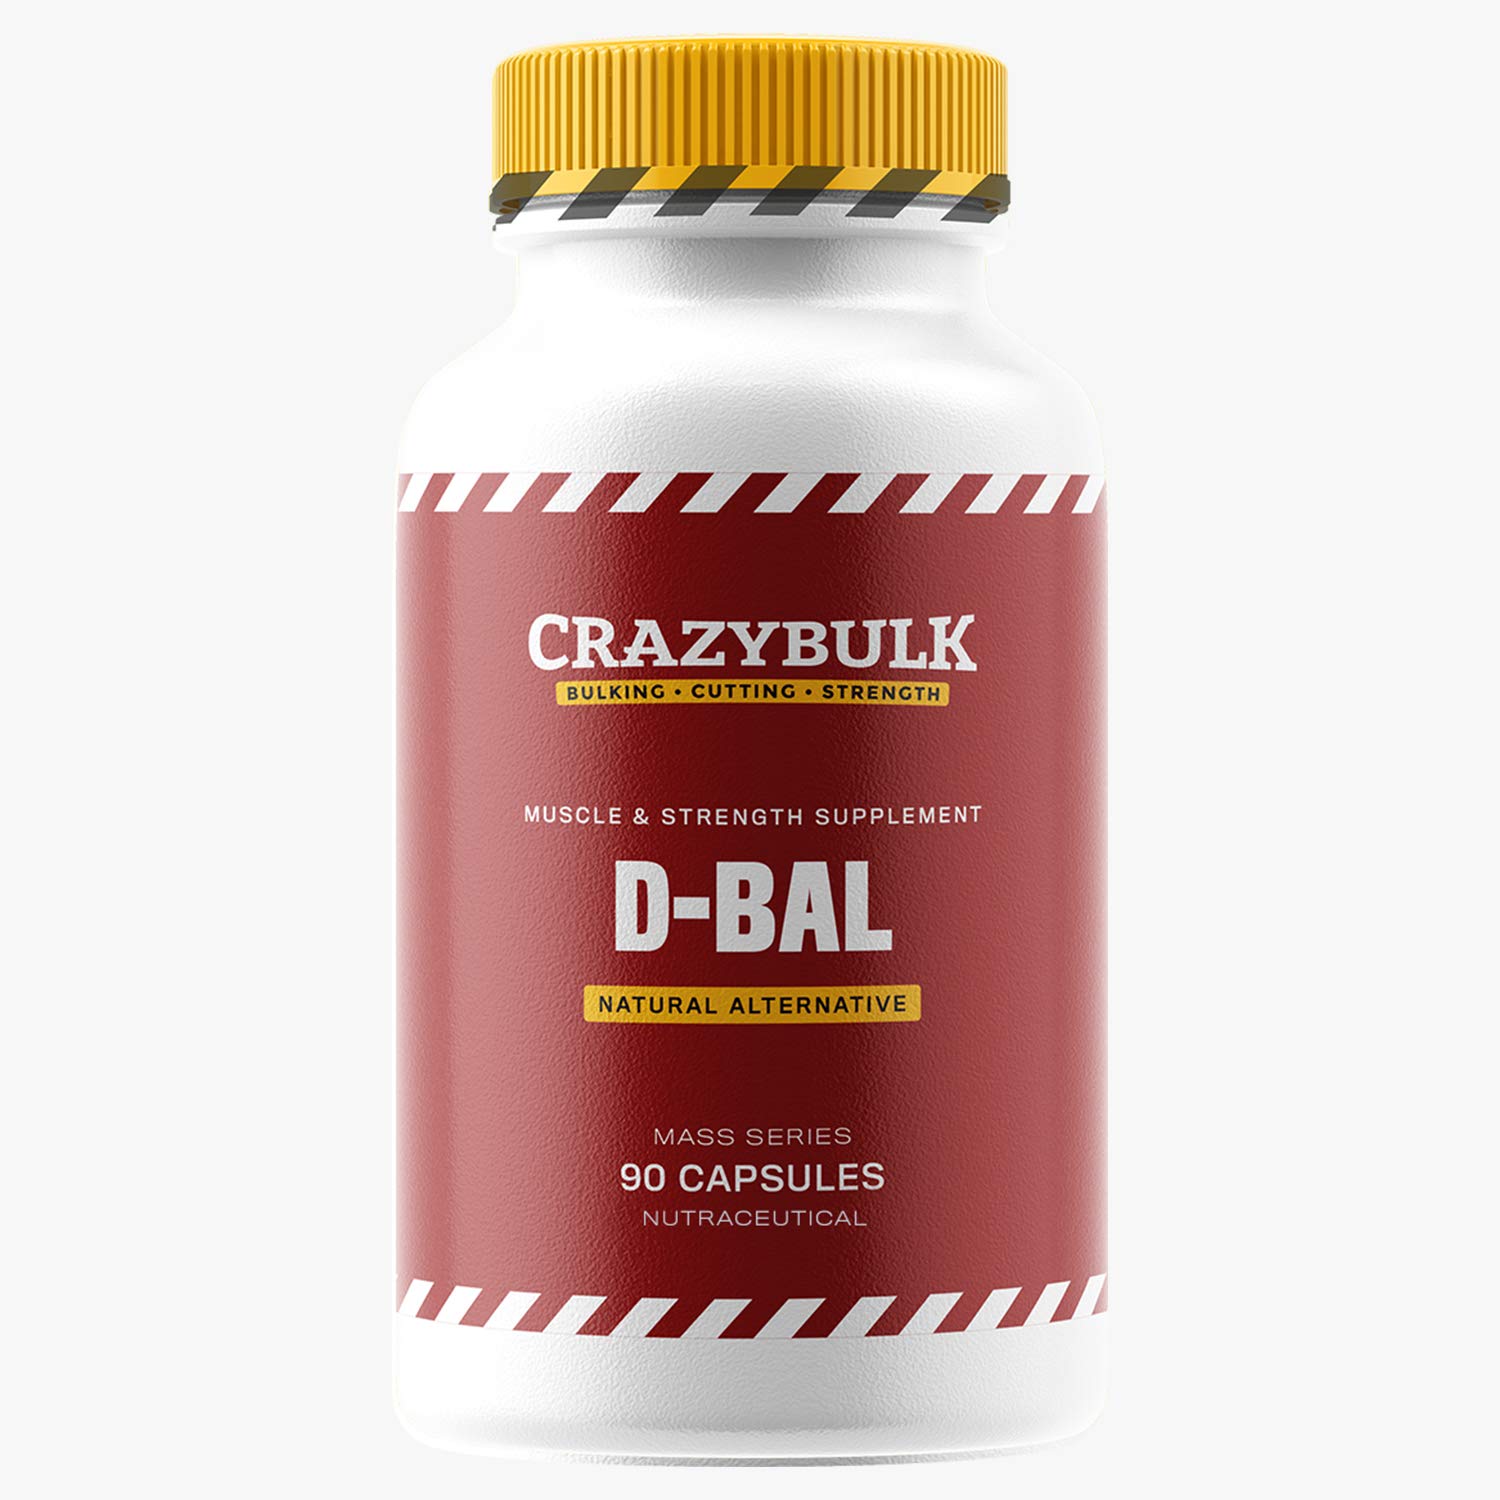 dbal - Does Dbol Make You Fat?